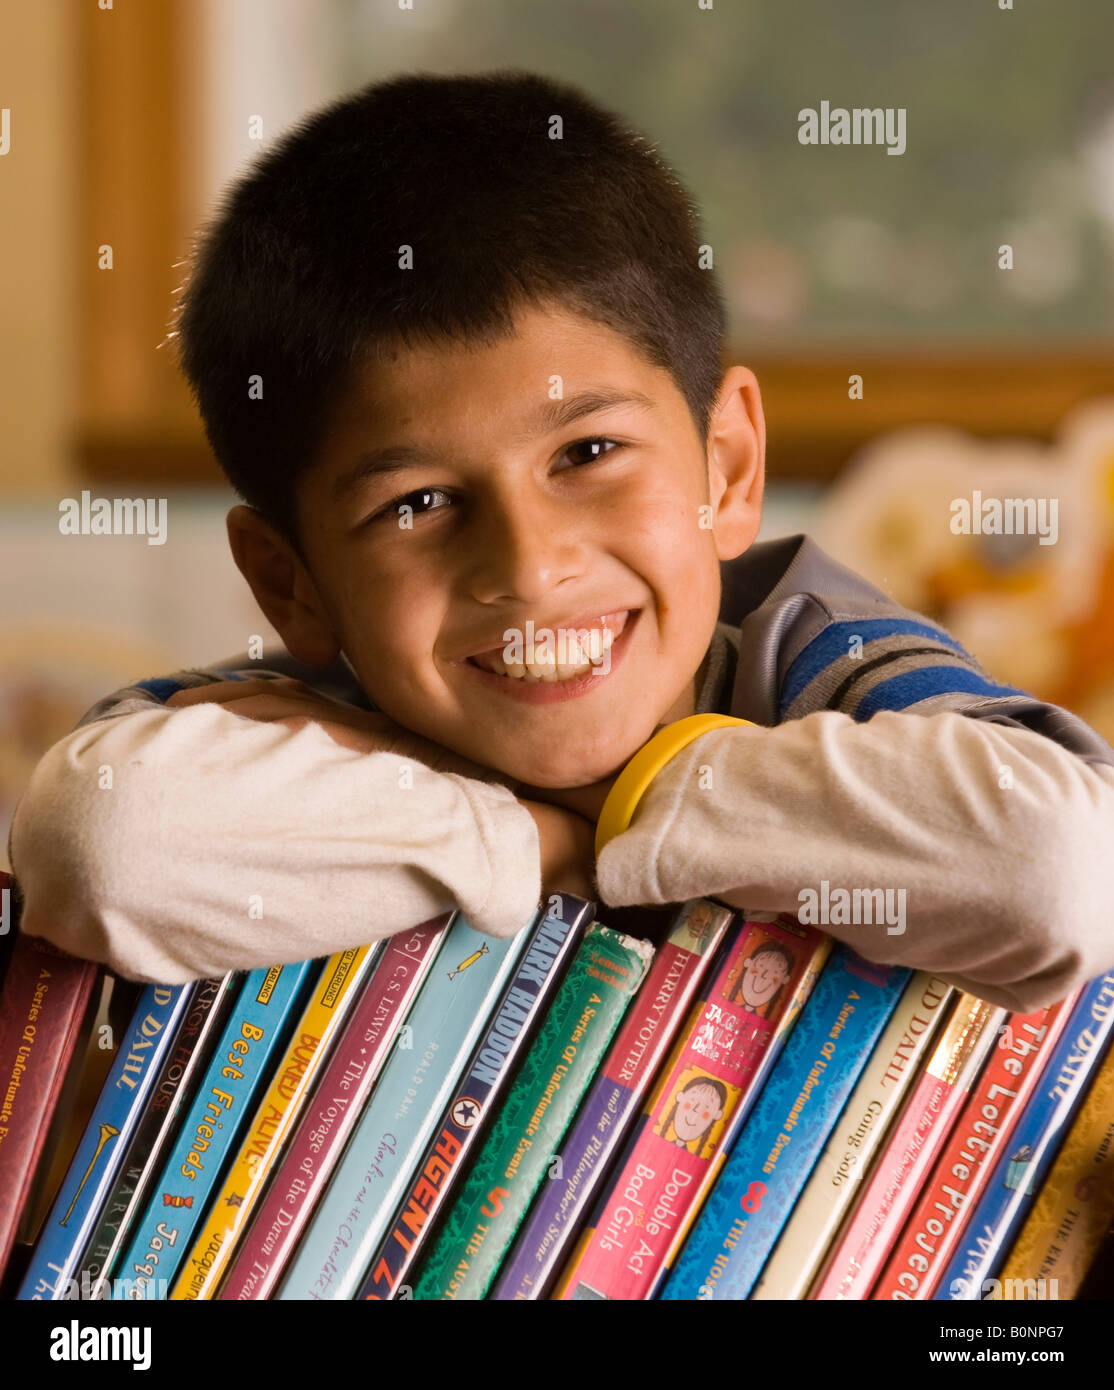 Bildnis eines Knaben stützte sich auf Bücher und lächelnd Stockfoto